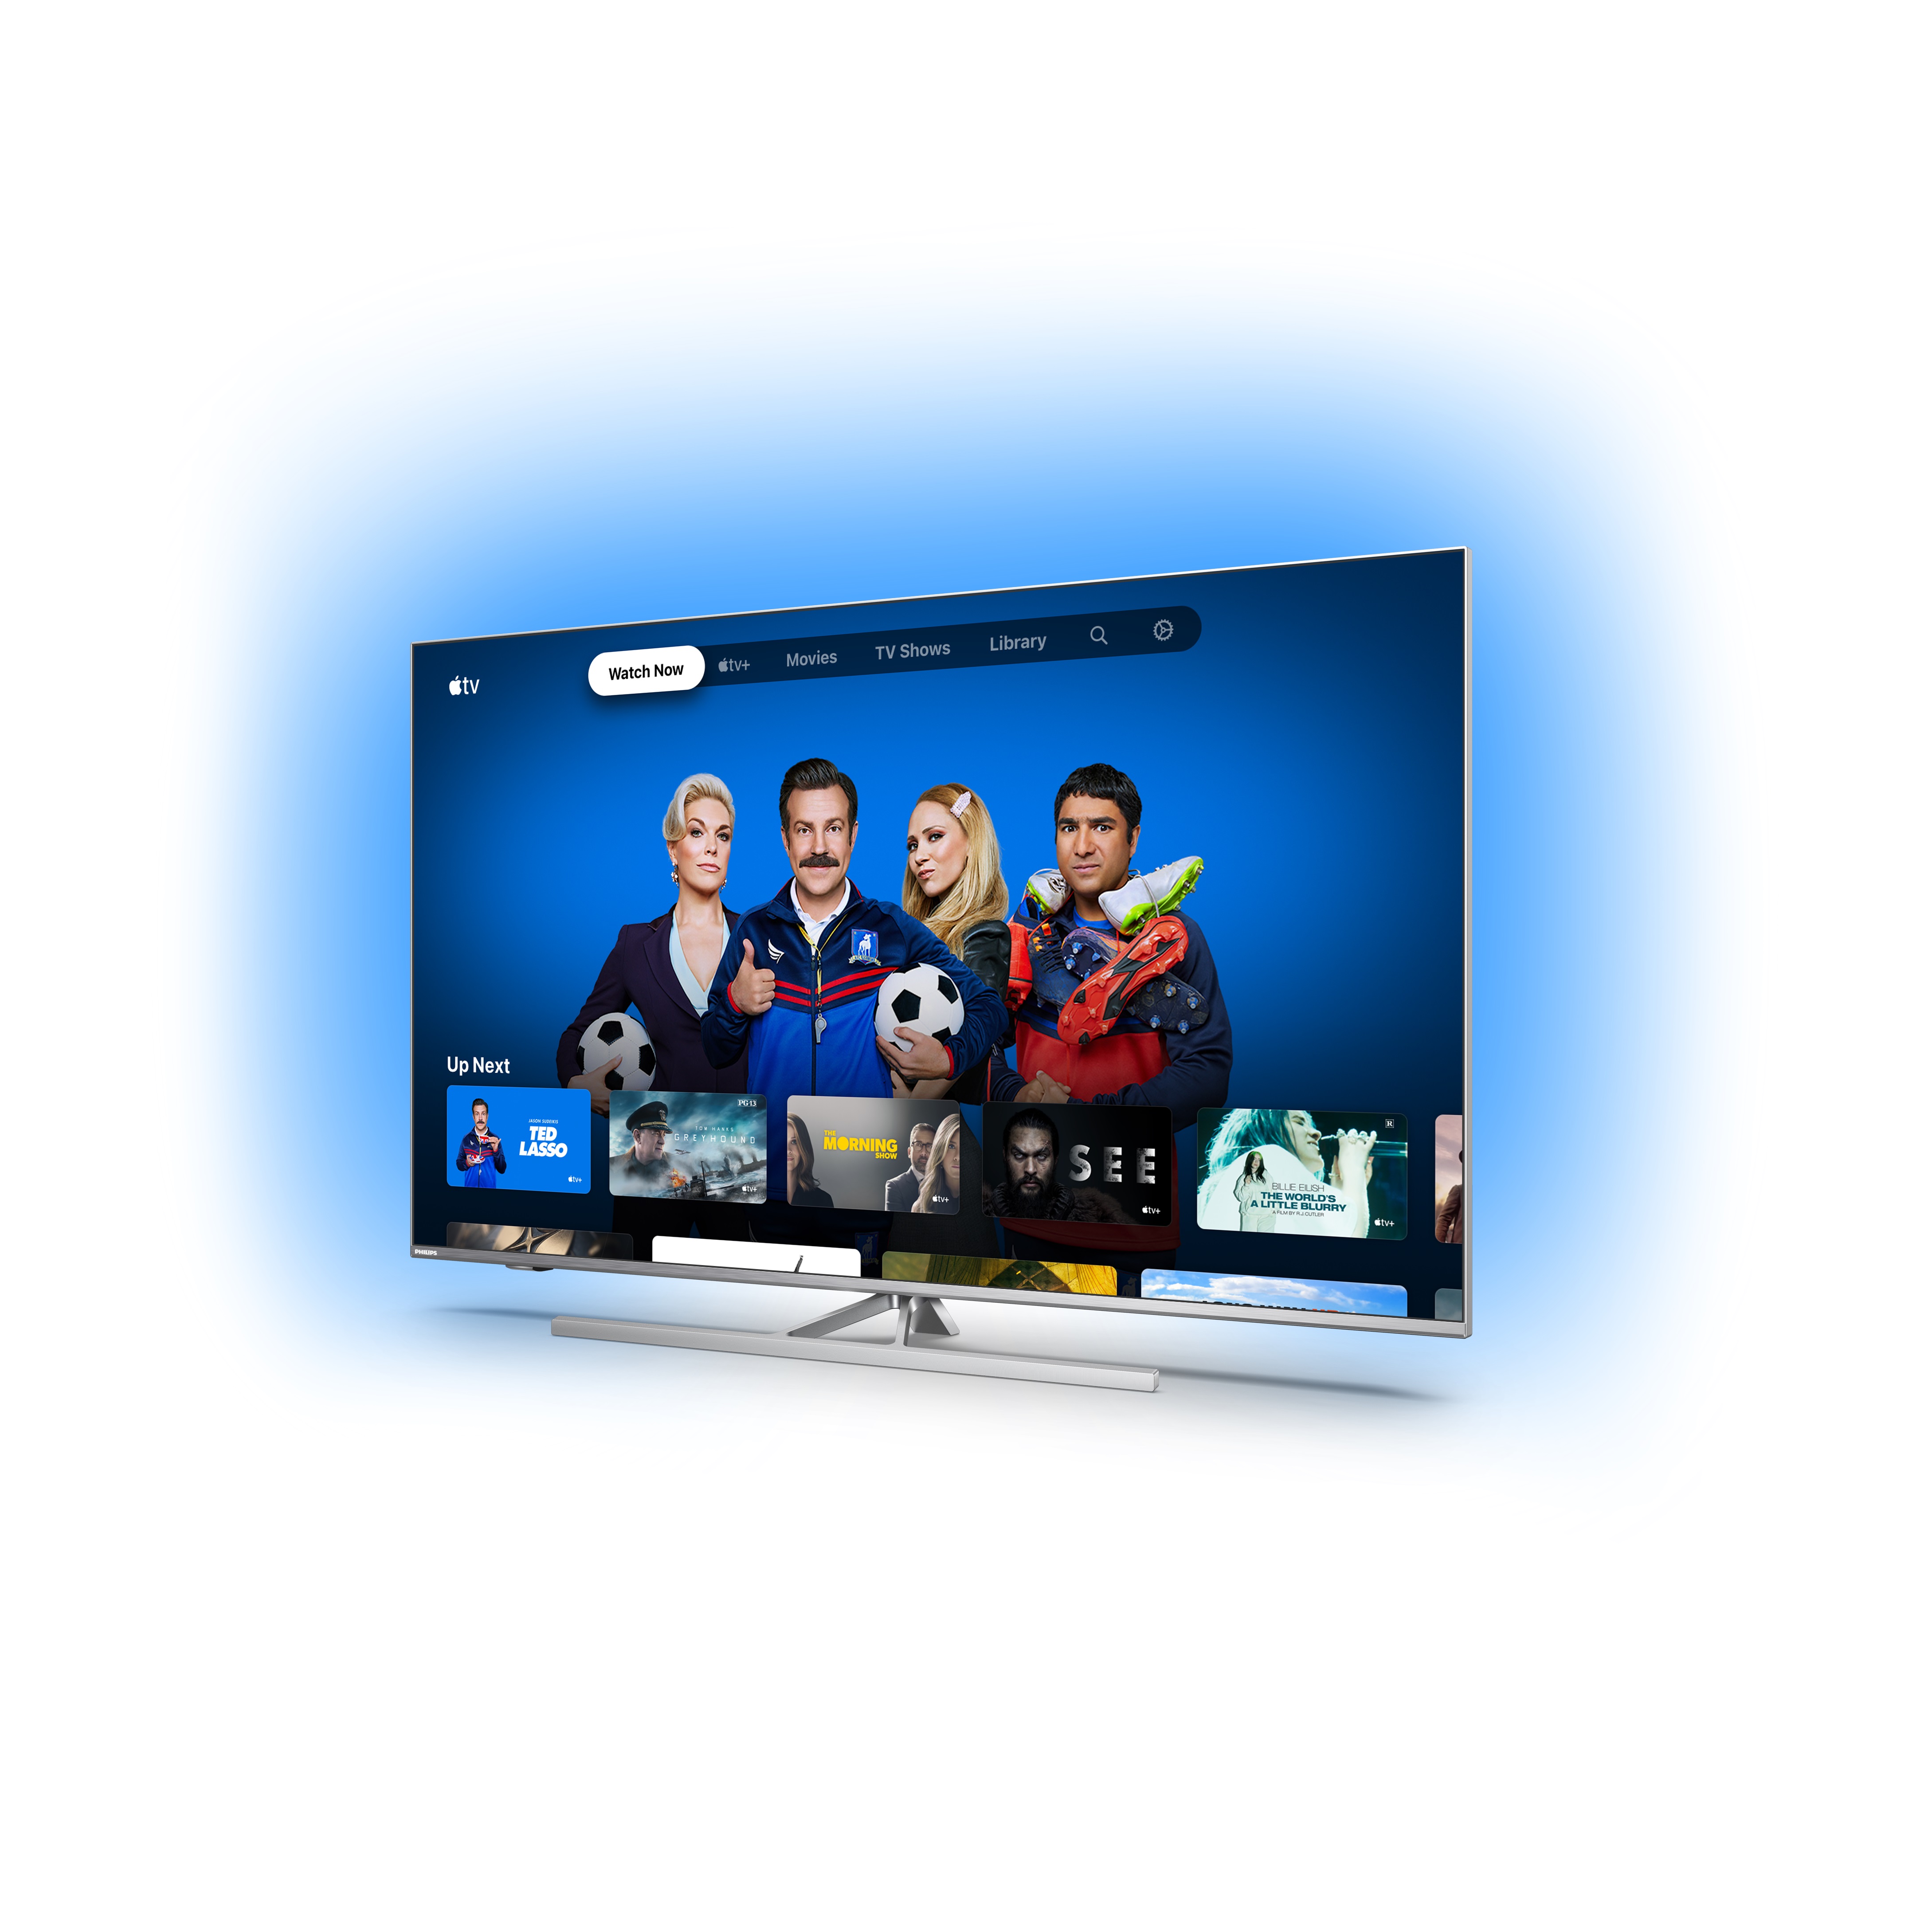 Apple TV dostępne na wszystkich telewizorach Philips z Android TV!